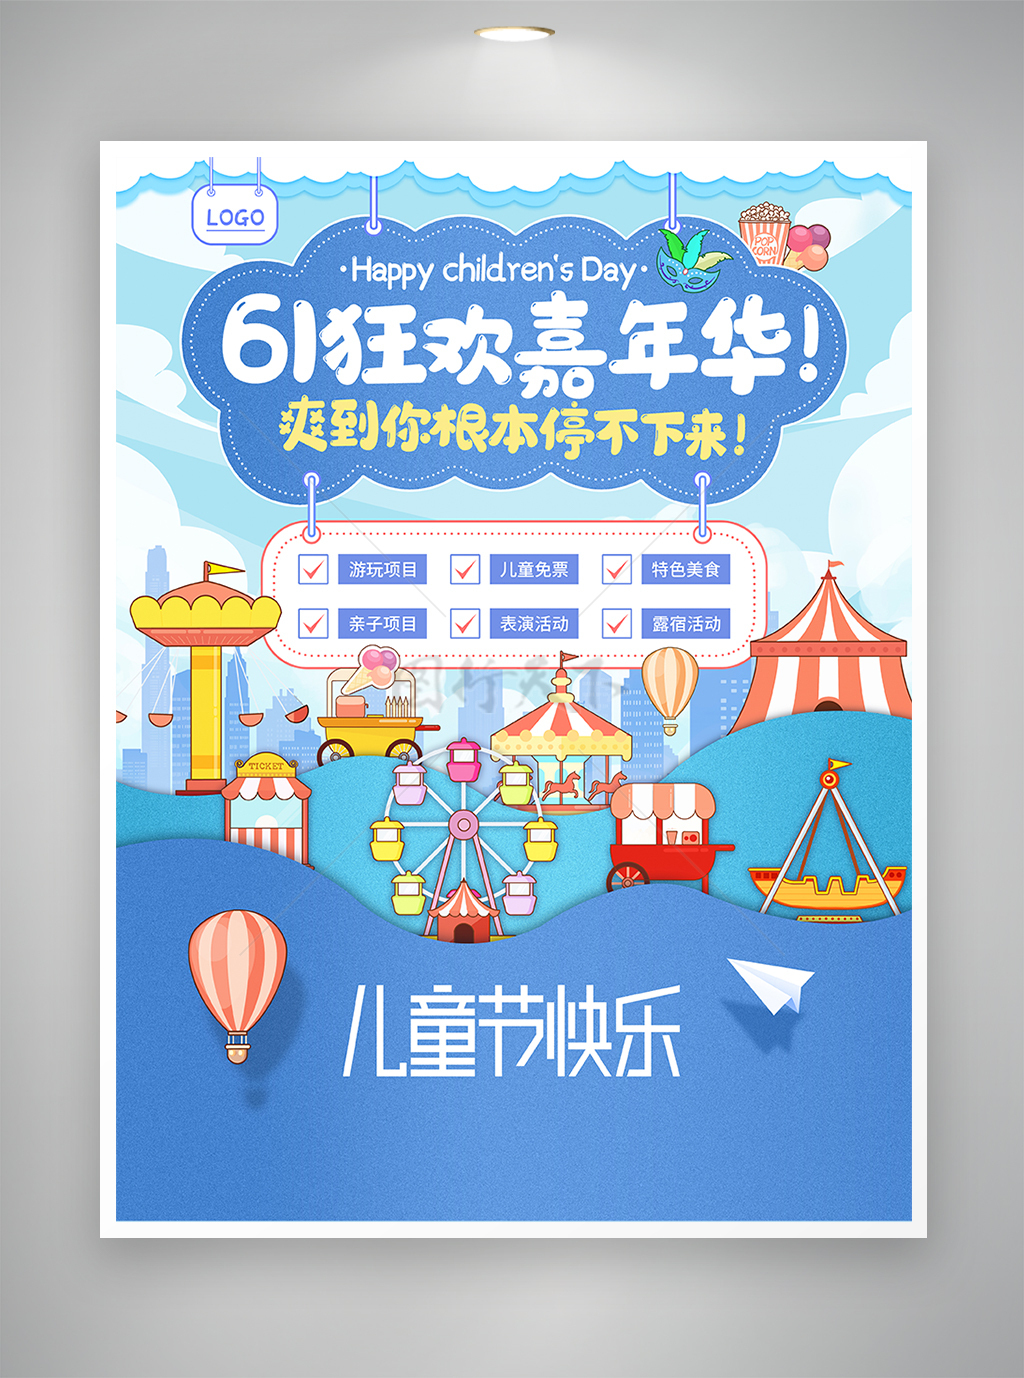 61狂欢嘉年华儿童节节日宣传海报